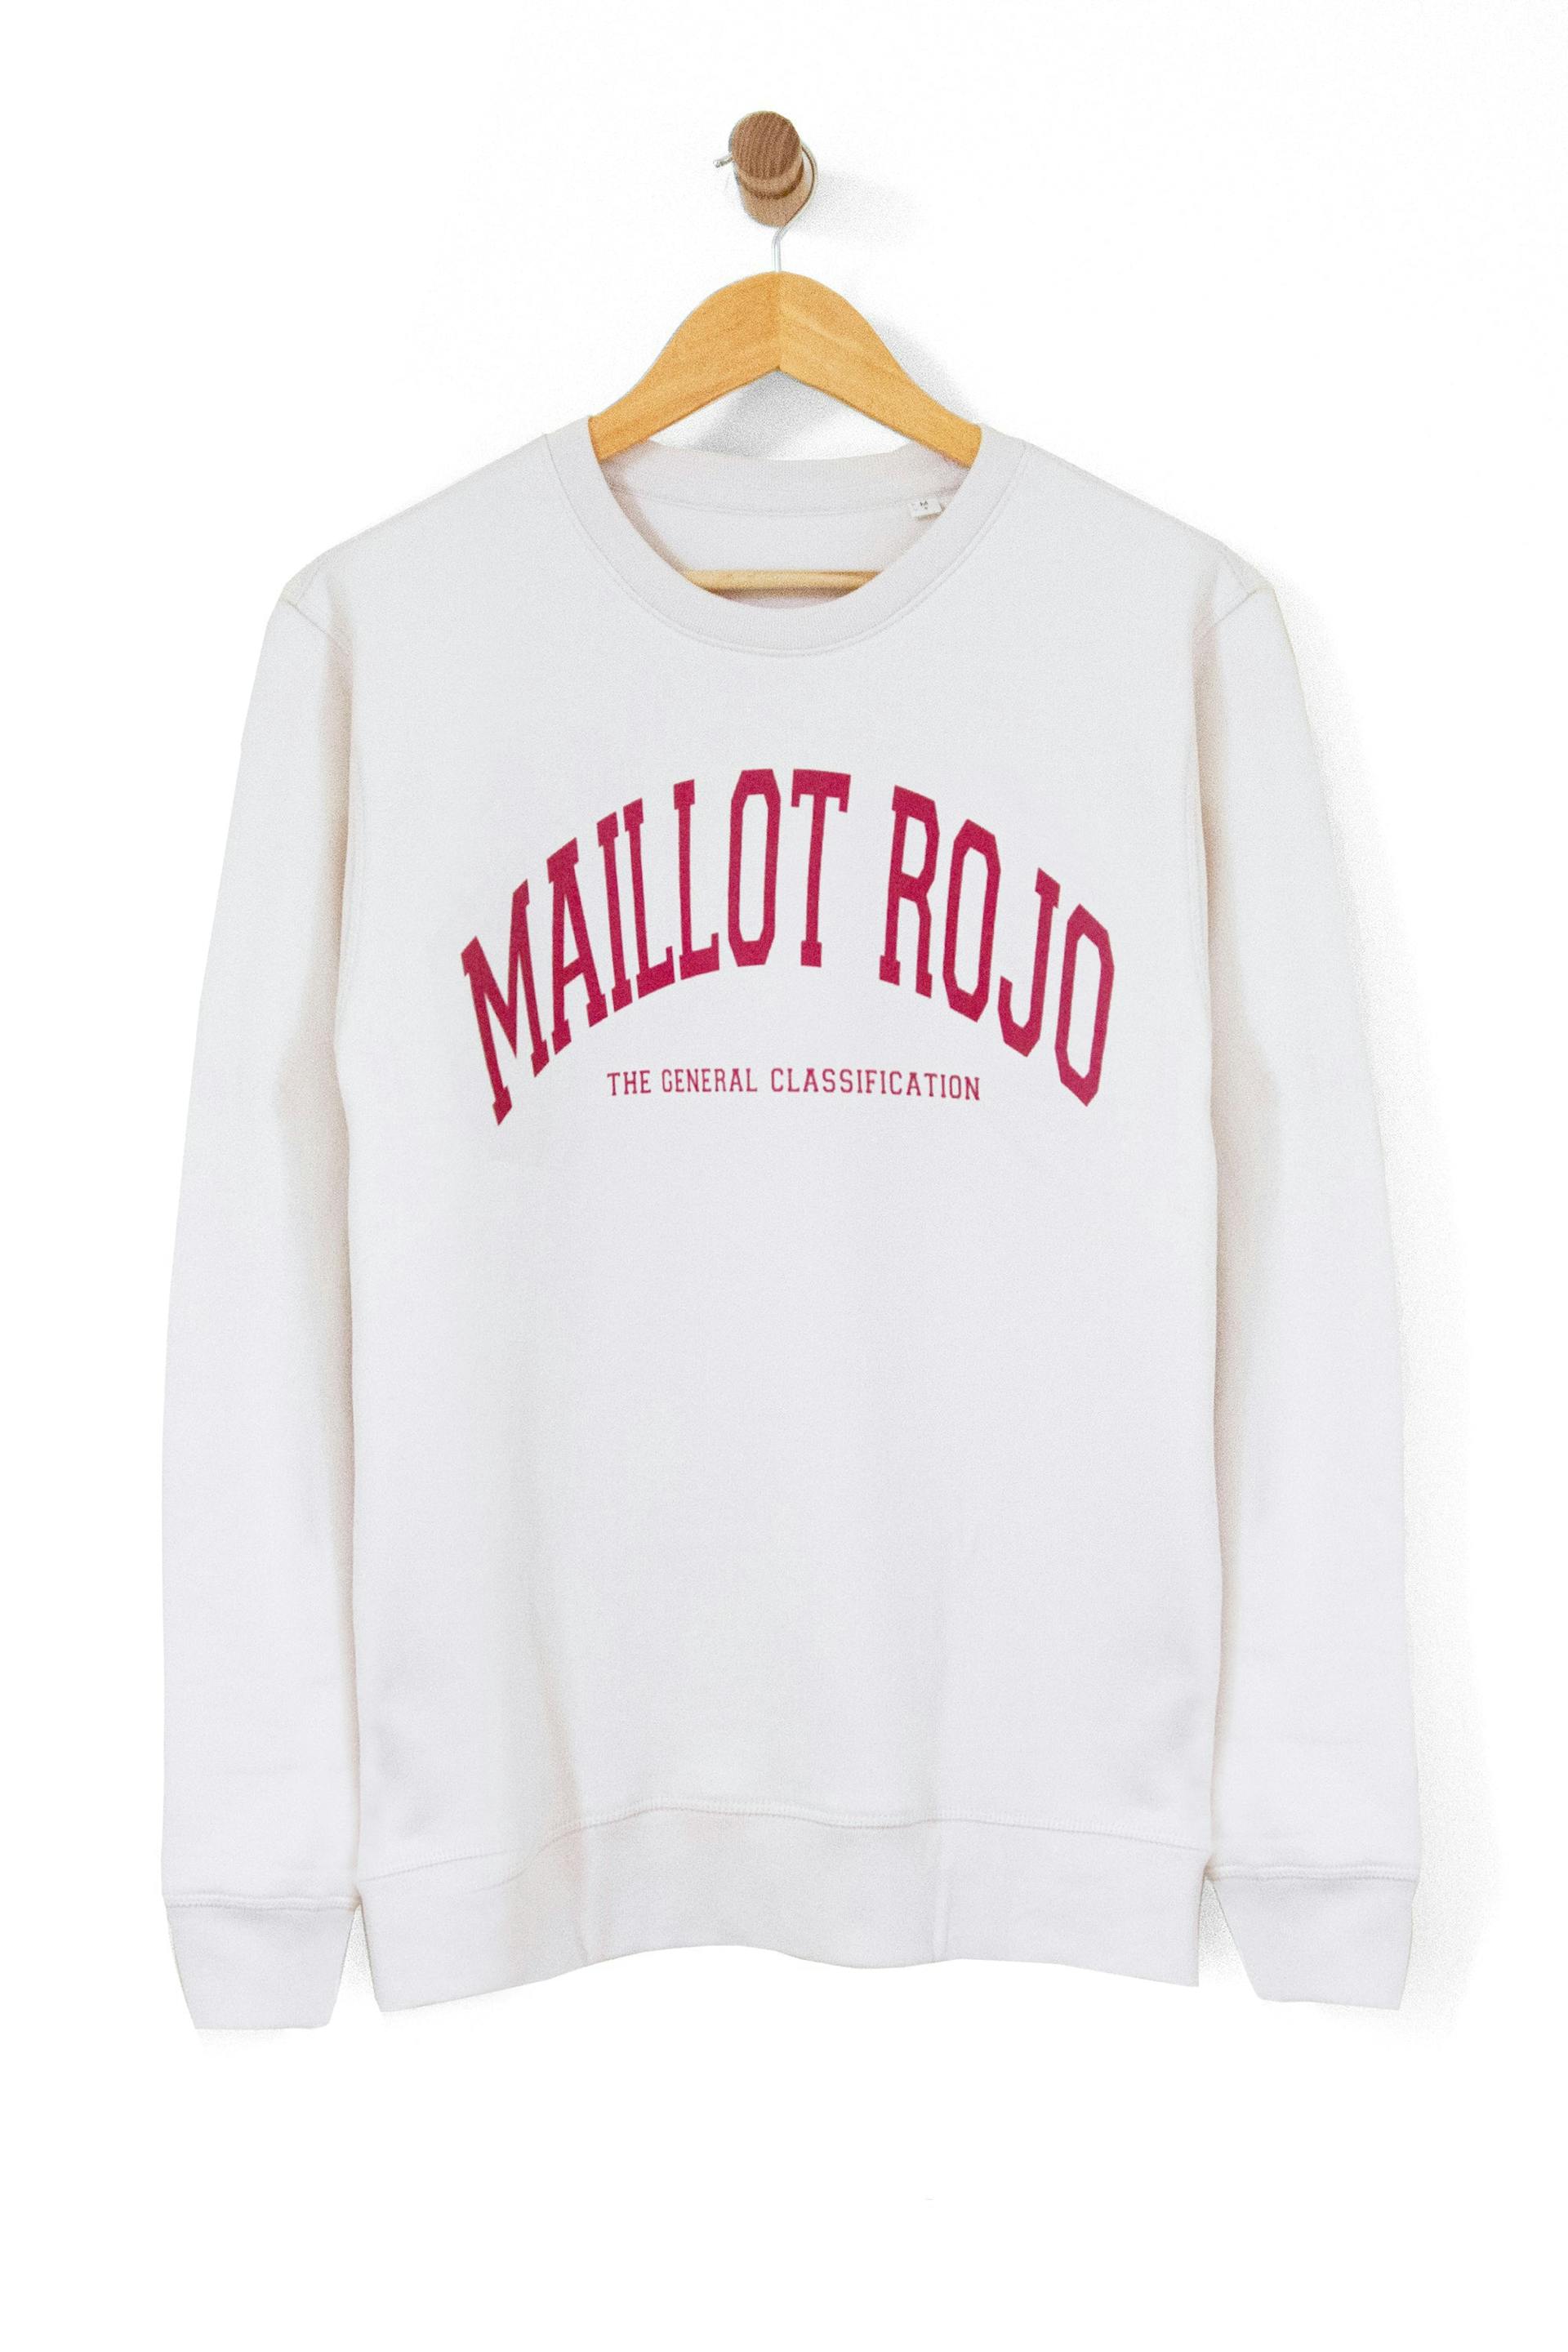 Maillot Rojo Crew Vintage White